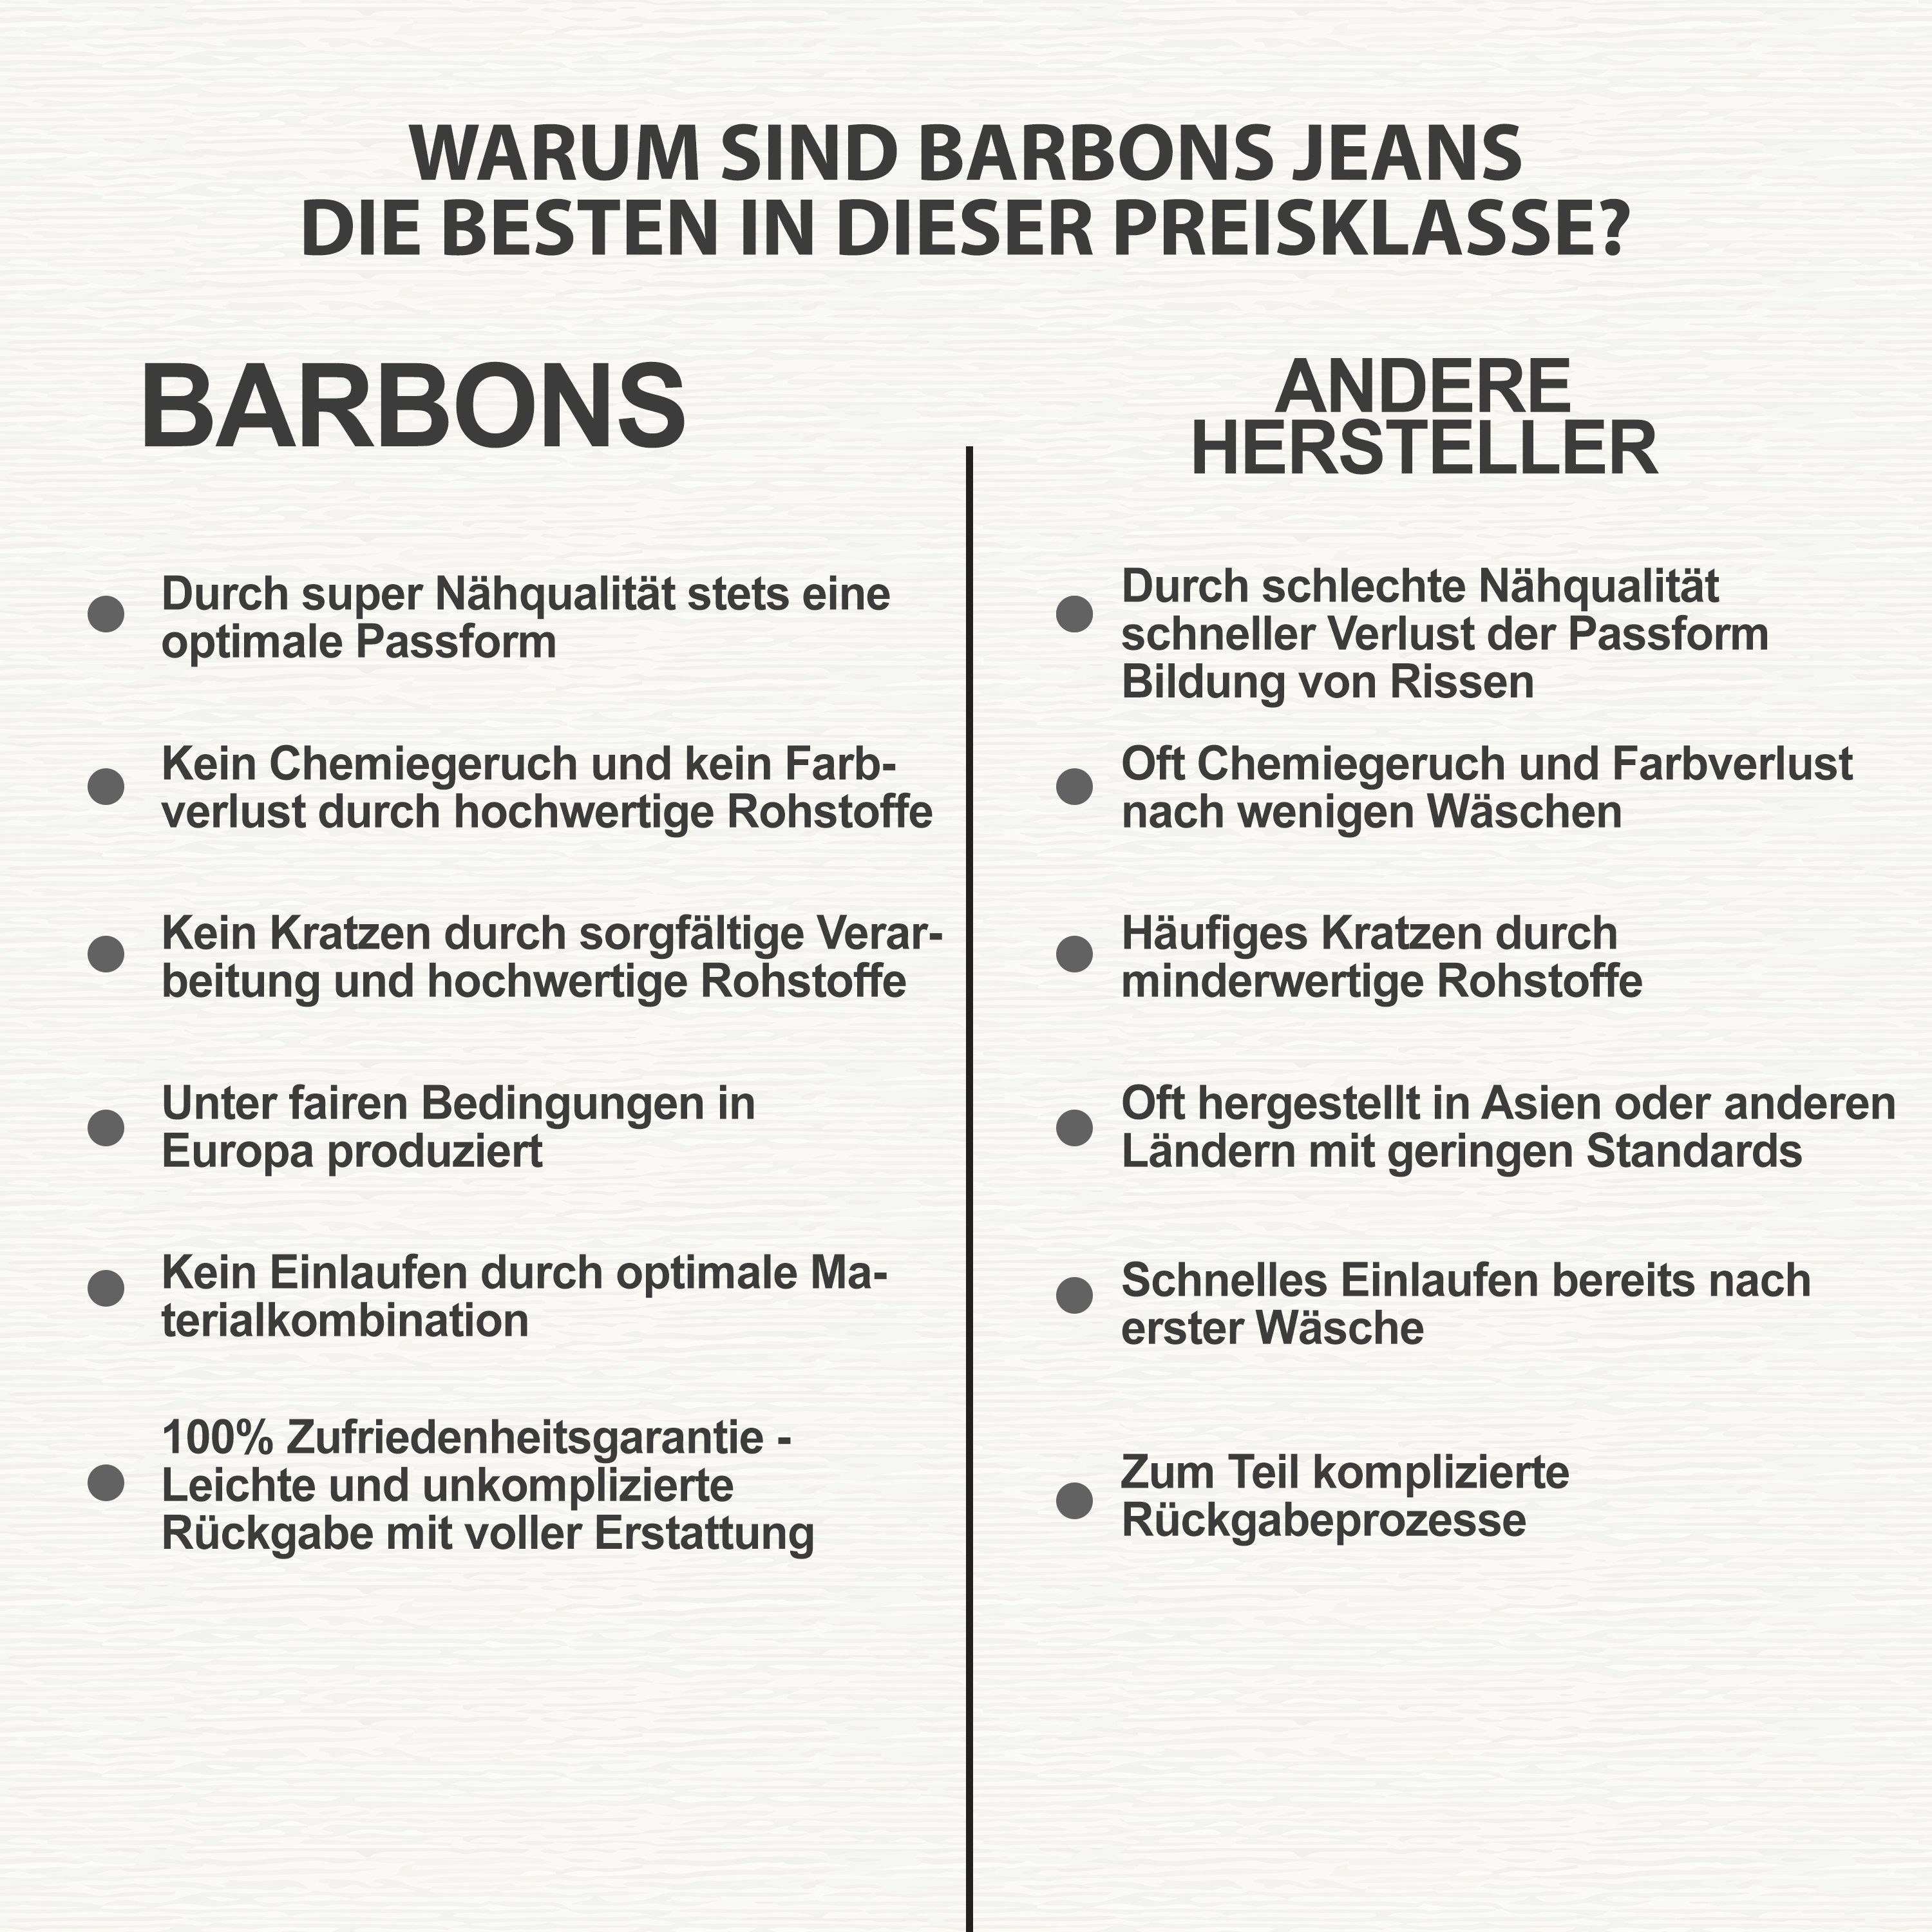 05-Hellblau Regular 5-Pocket-Jeans Design Herren 5-Pocket Fit BARBONS